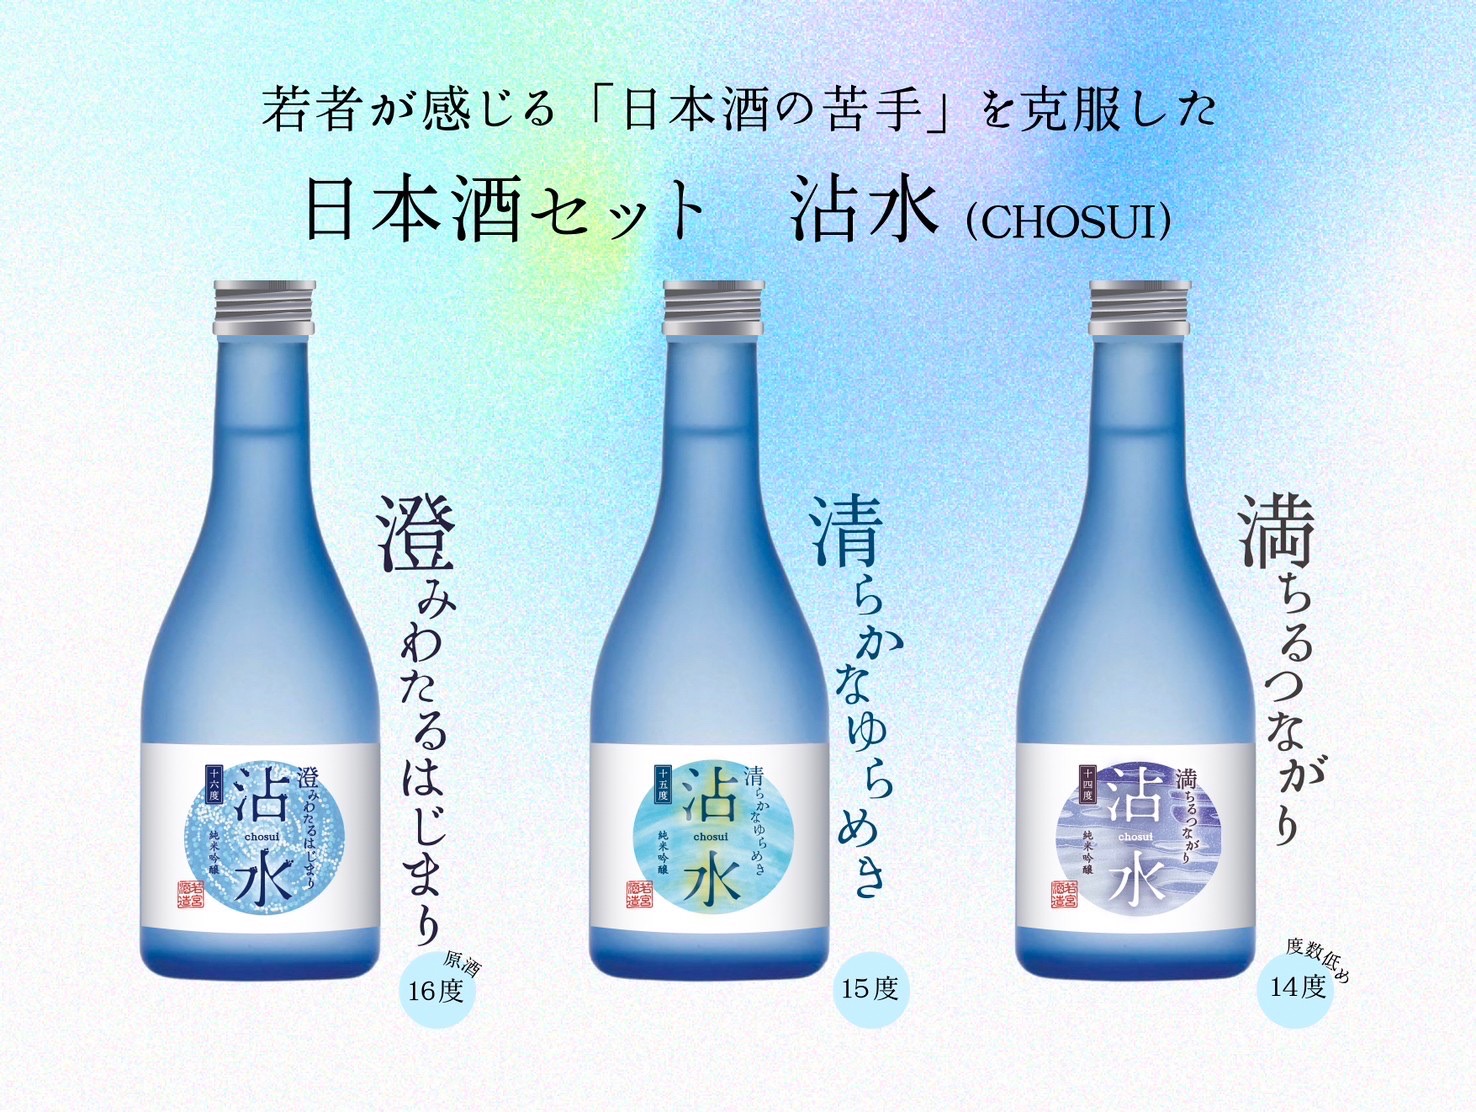 日本酒セット